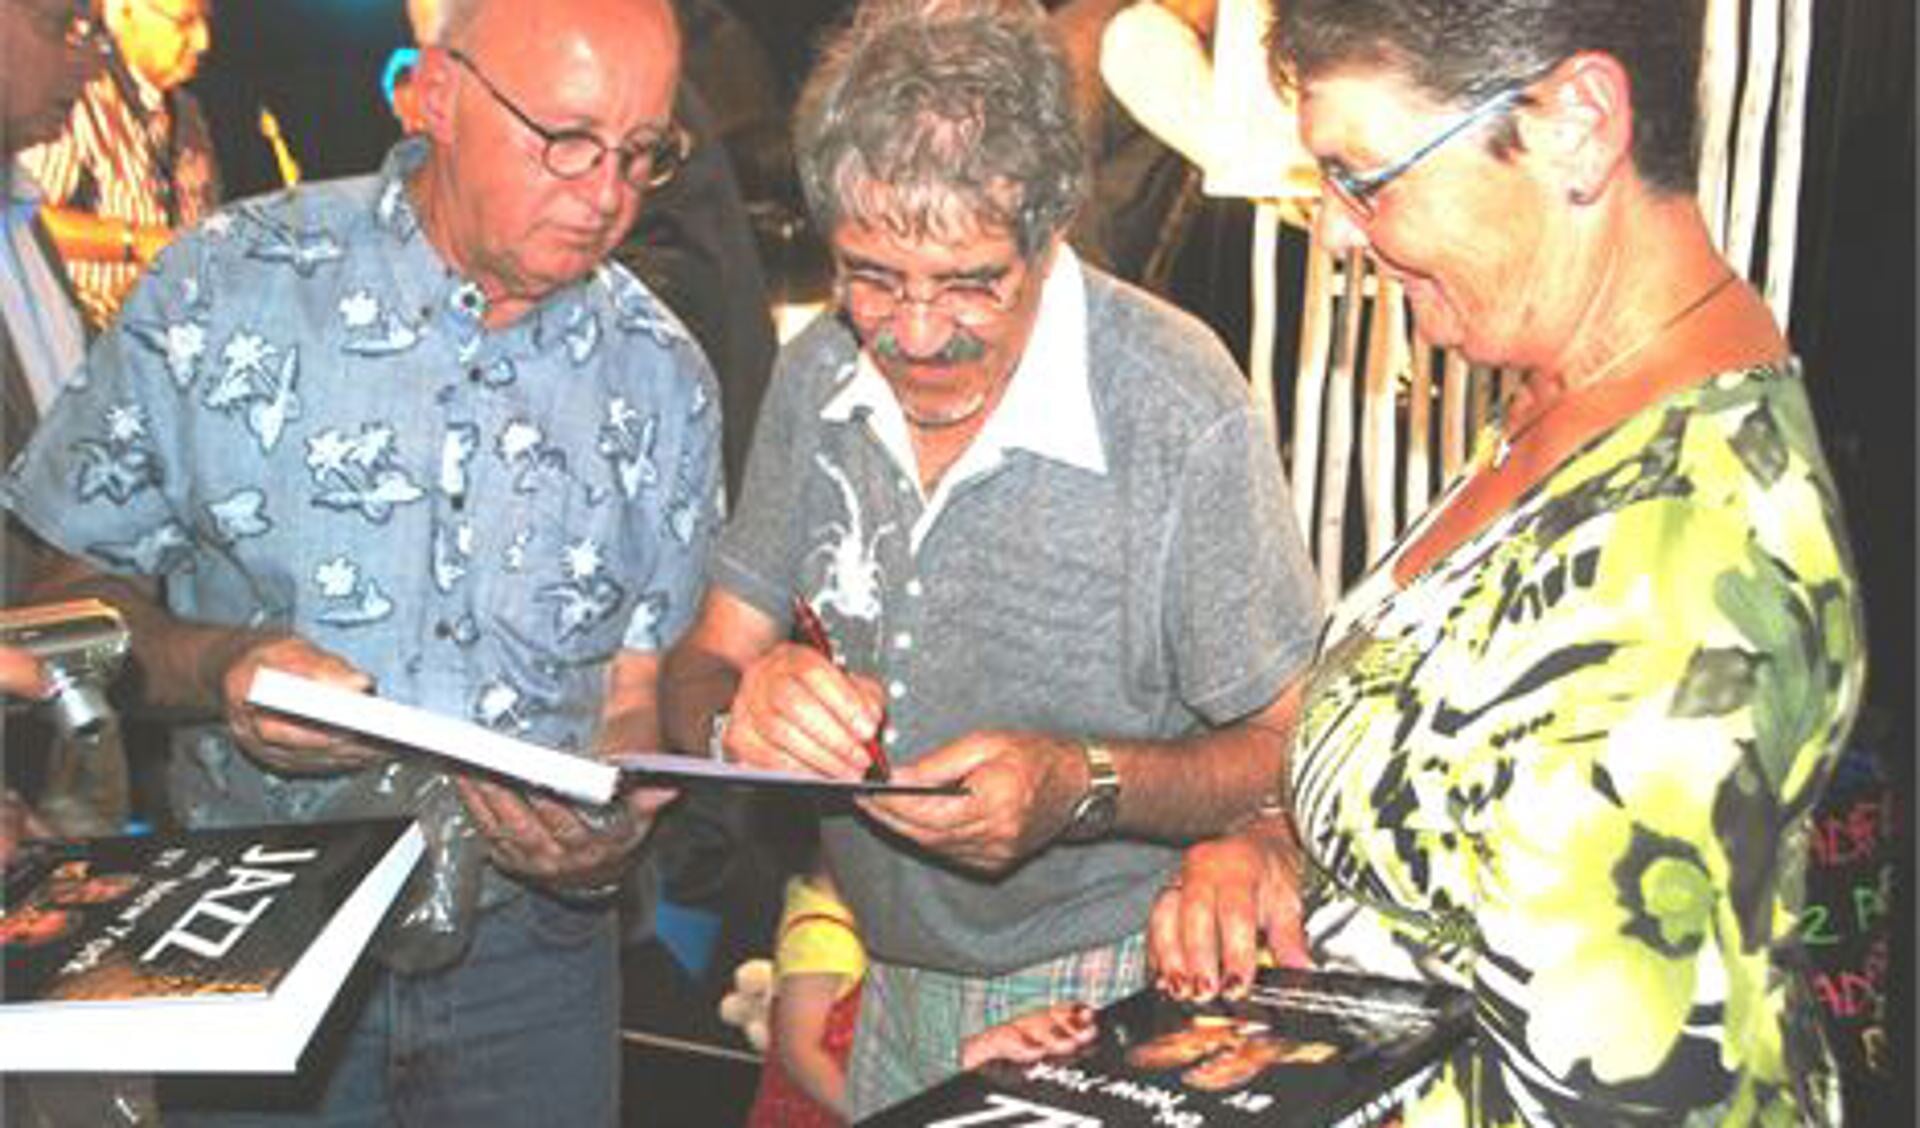 Ruby R. Kamerbeek bij het signeren van zijn boek na de presentatie in “Het Witte Paard” in Rotterdam.